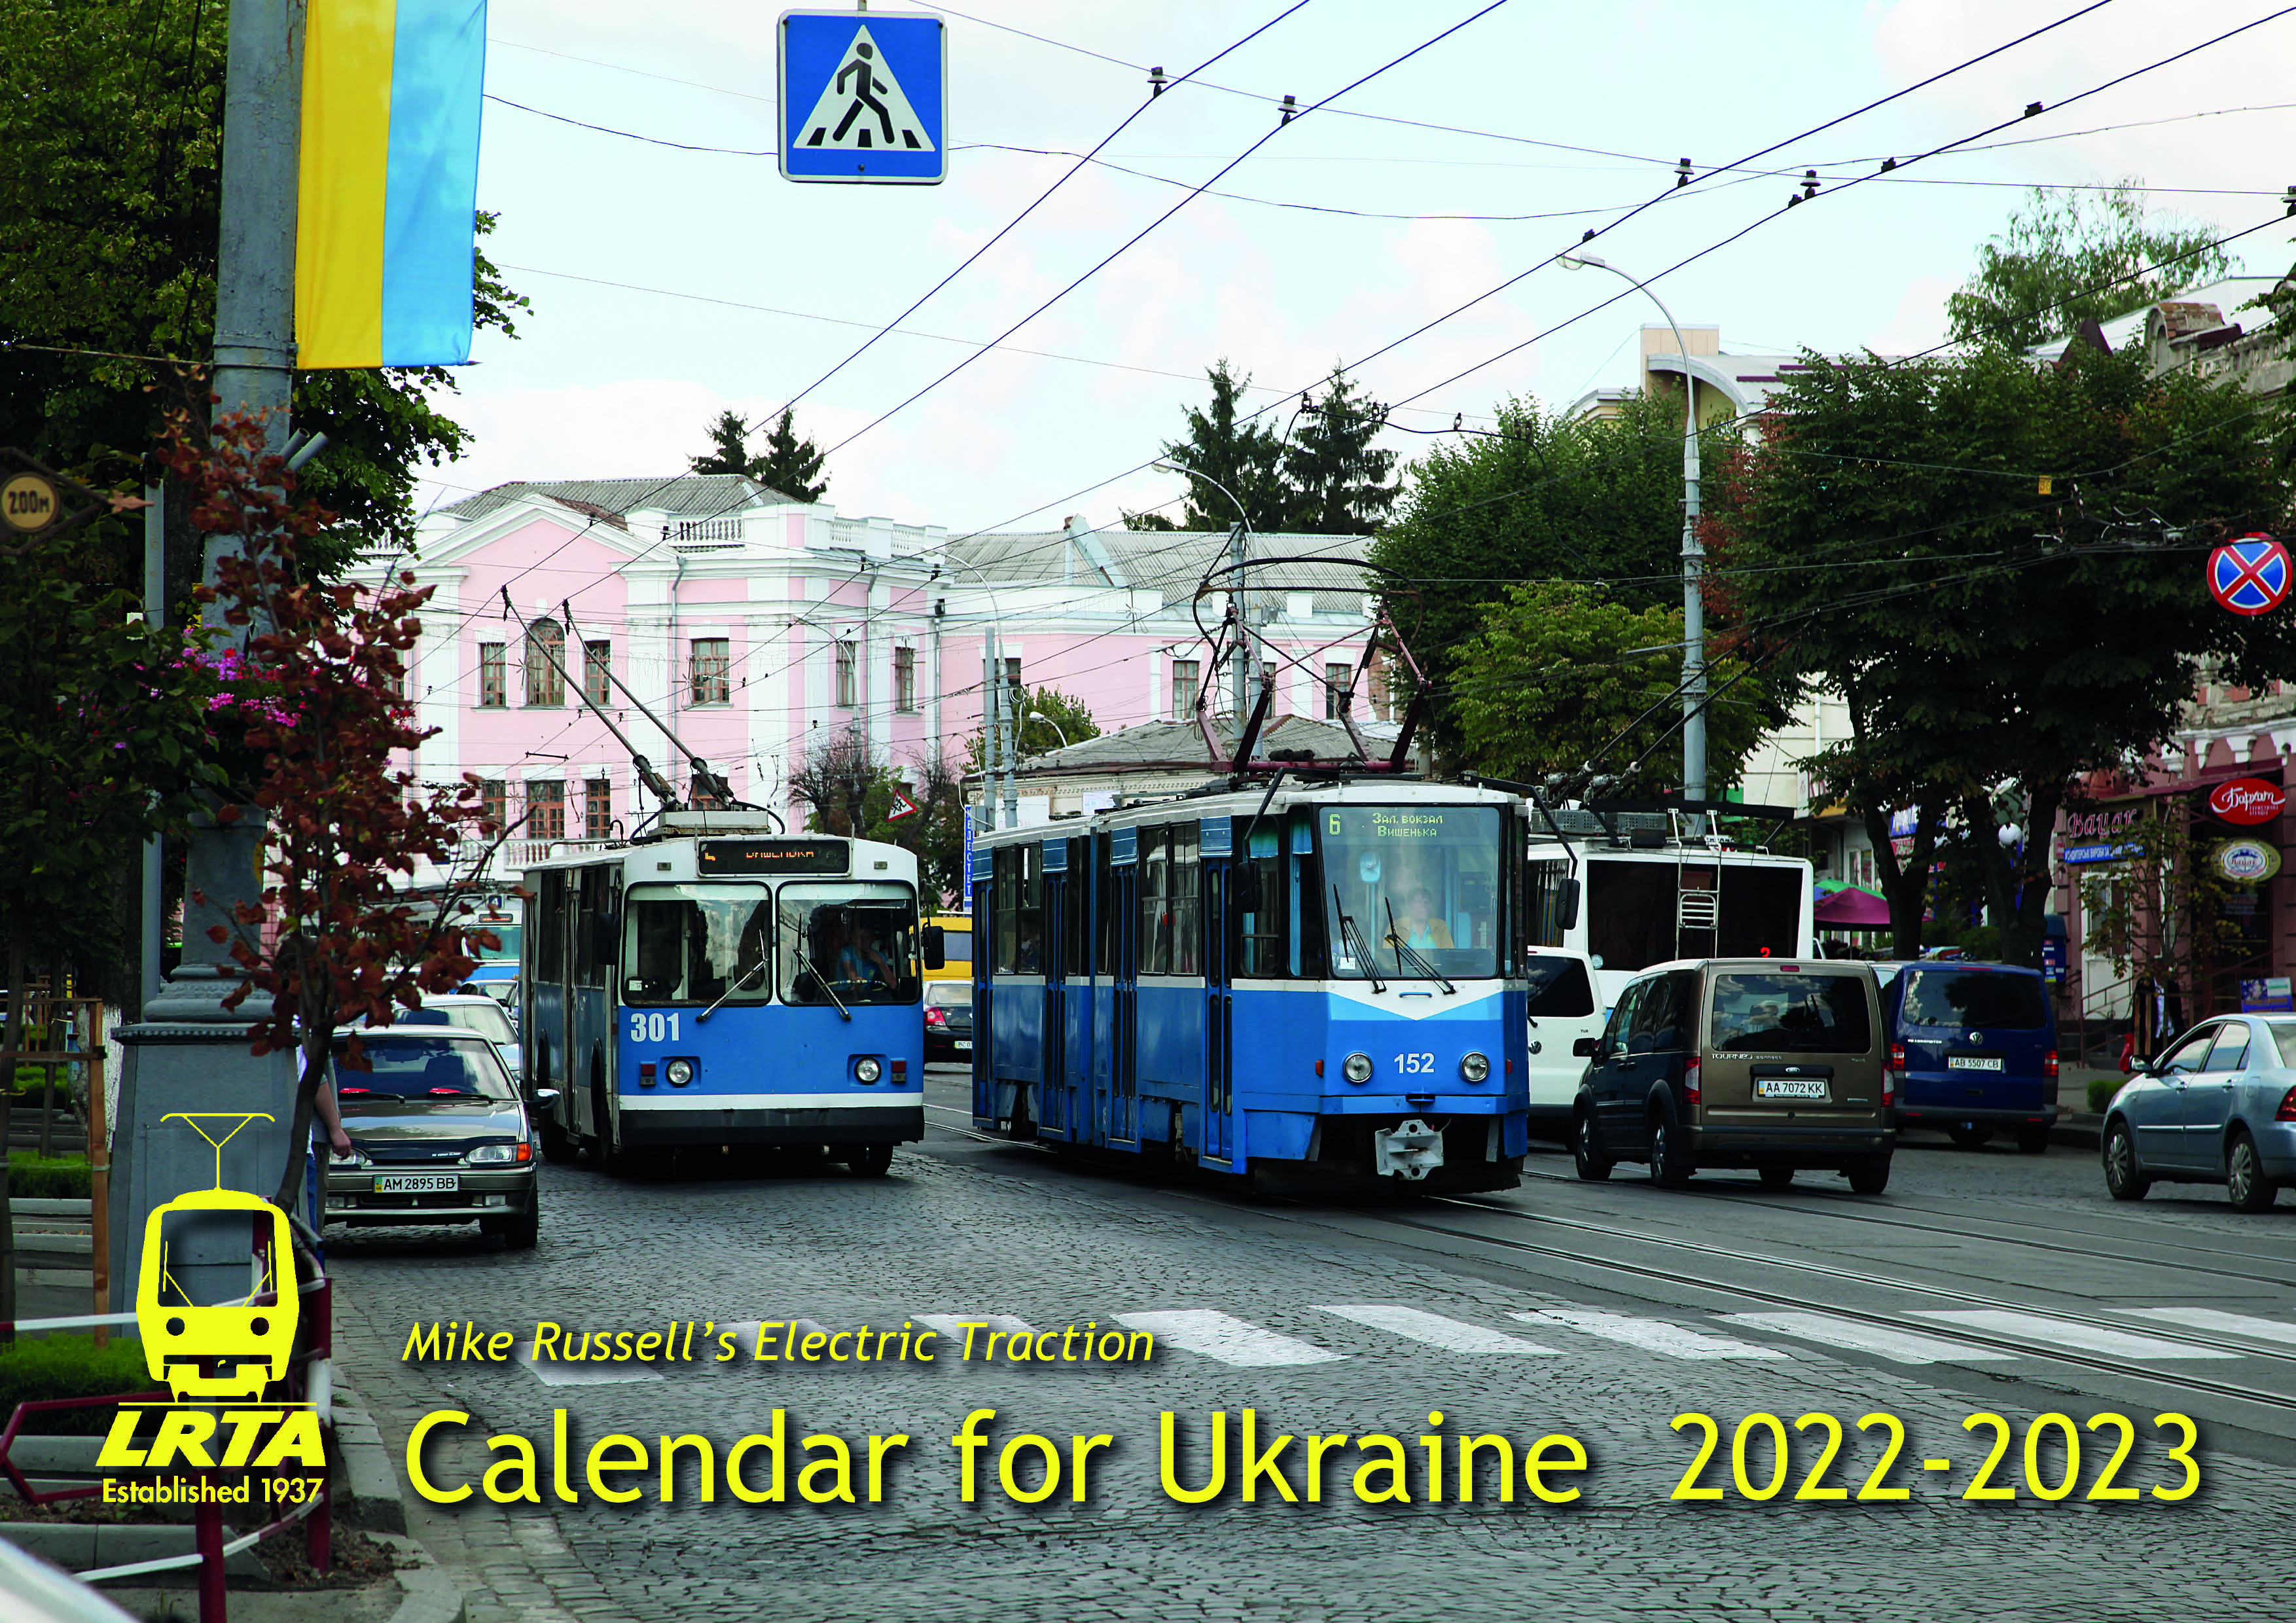 LRTA launches calendar for Ukraine